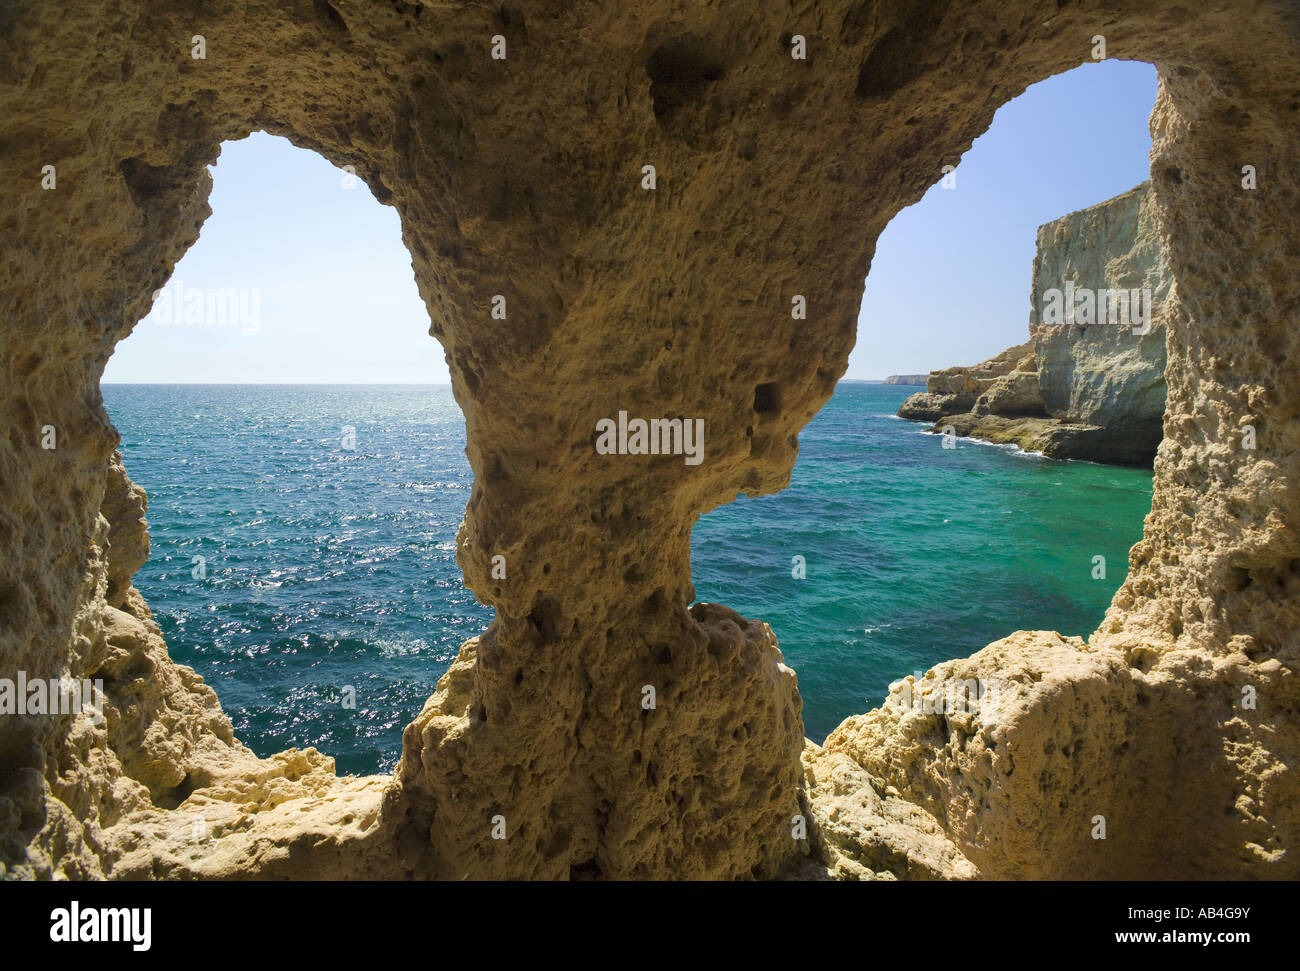 Praia Do Carvoeiro, Algar Seco, view through Holes In the Cliff Stock Photo